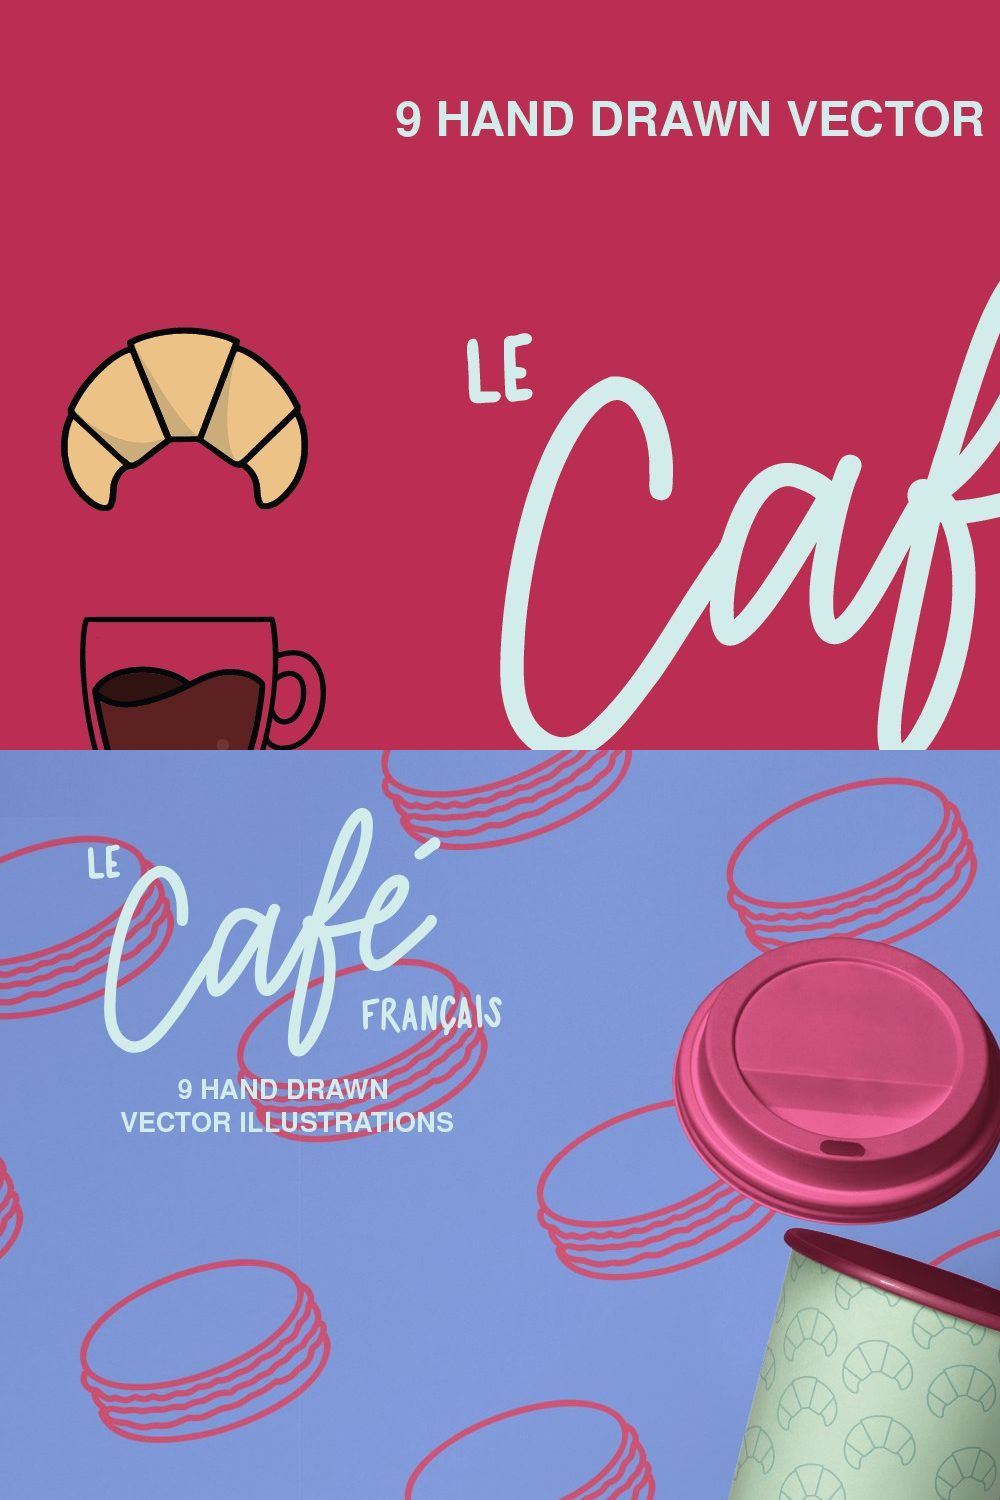 Le Cafe Français pinterest preview image.